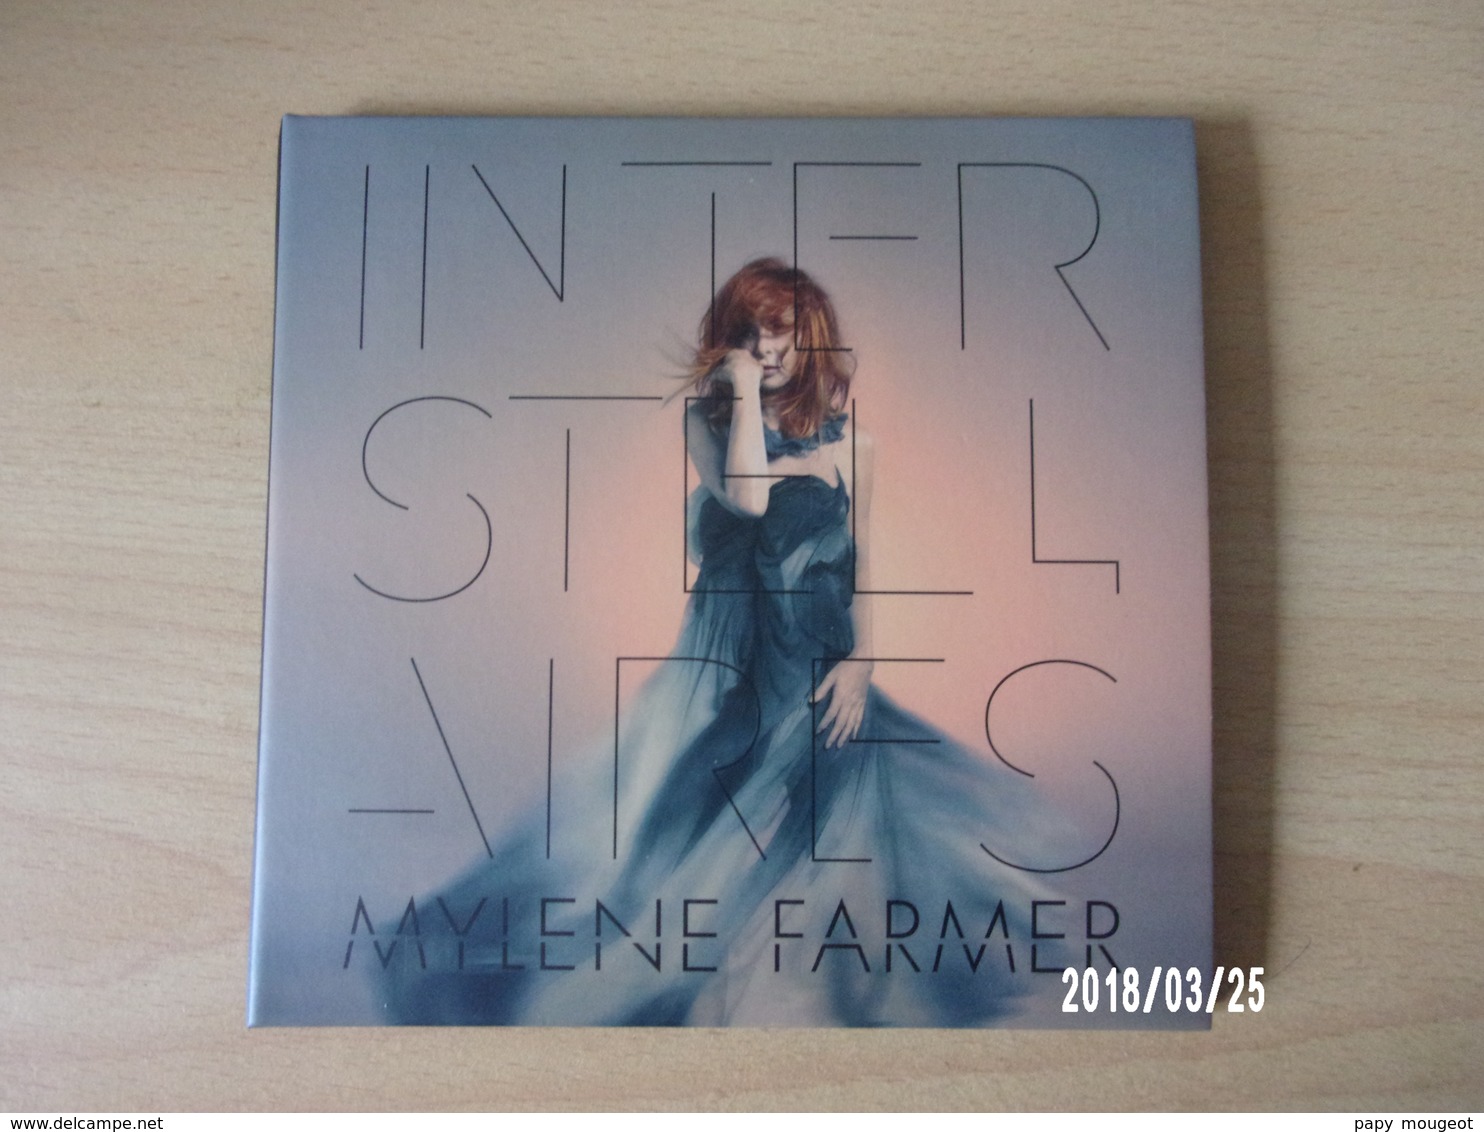 CD - Mylène Farmer - Interstellaires - Disco, Pop